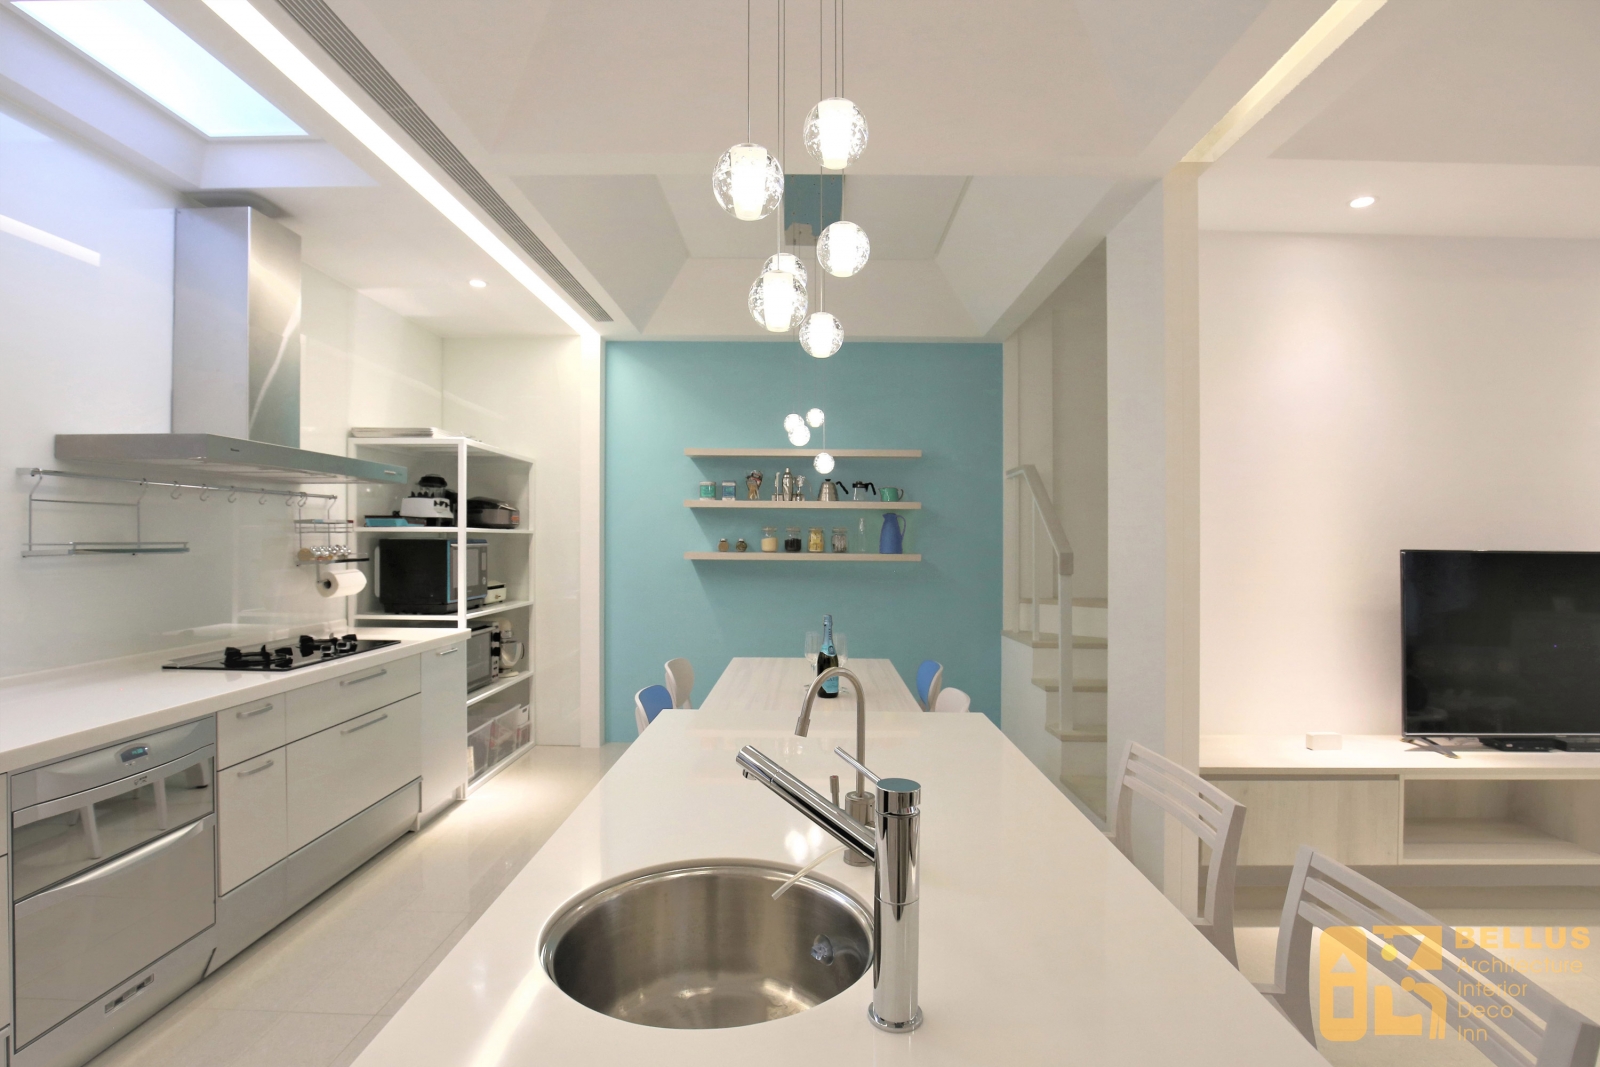 廚具區並有效利用天井玻璃自然採光,因應建築節能,利用天花造型延伸立面光縫,切割出不同區域